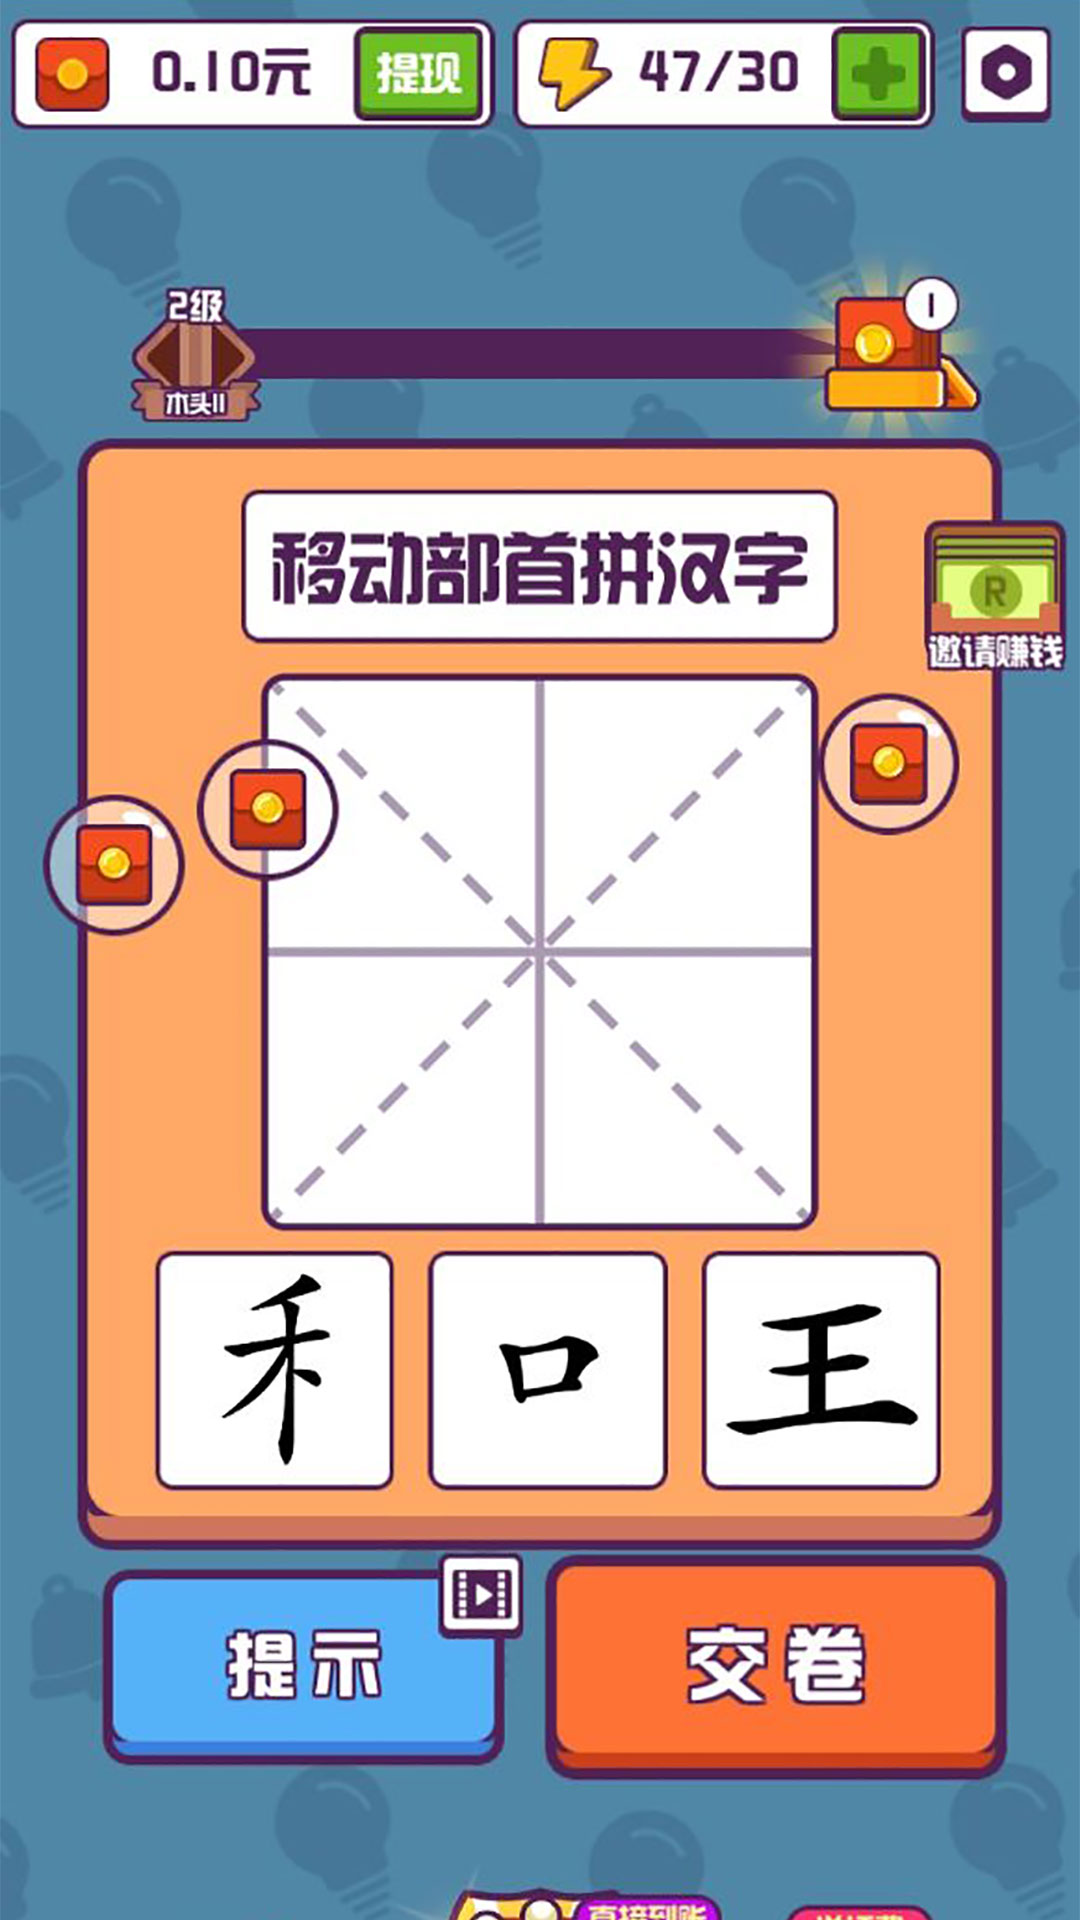 有趣的汉字游戏首充号ios,手游折扣充值平台苹果版